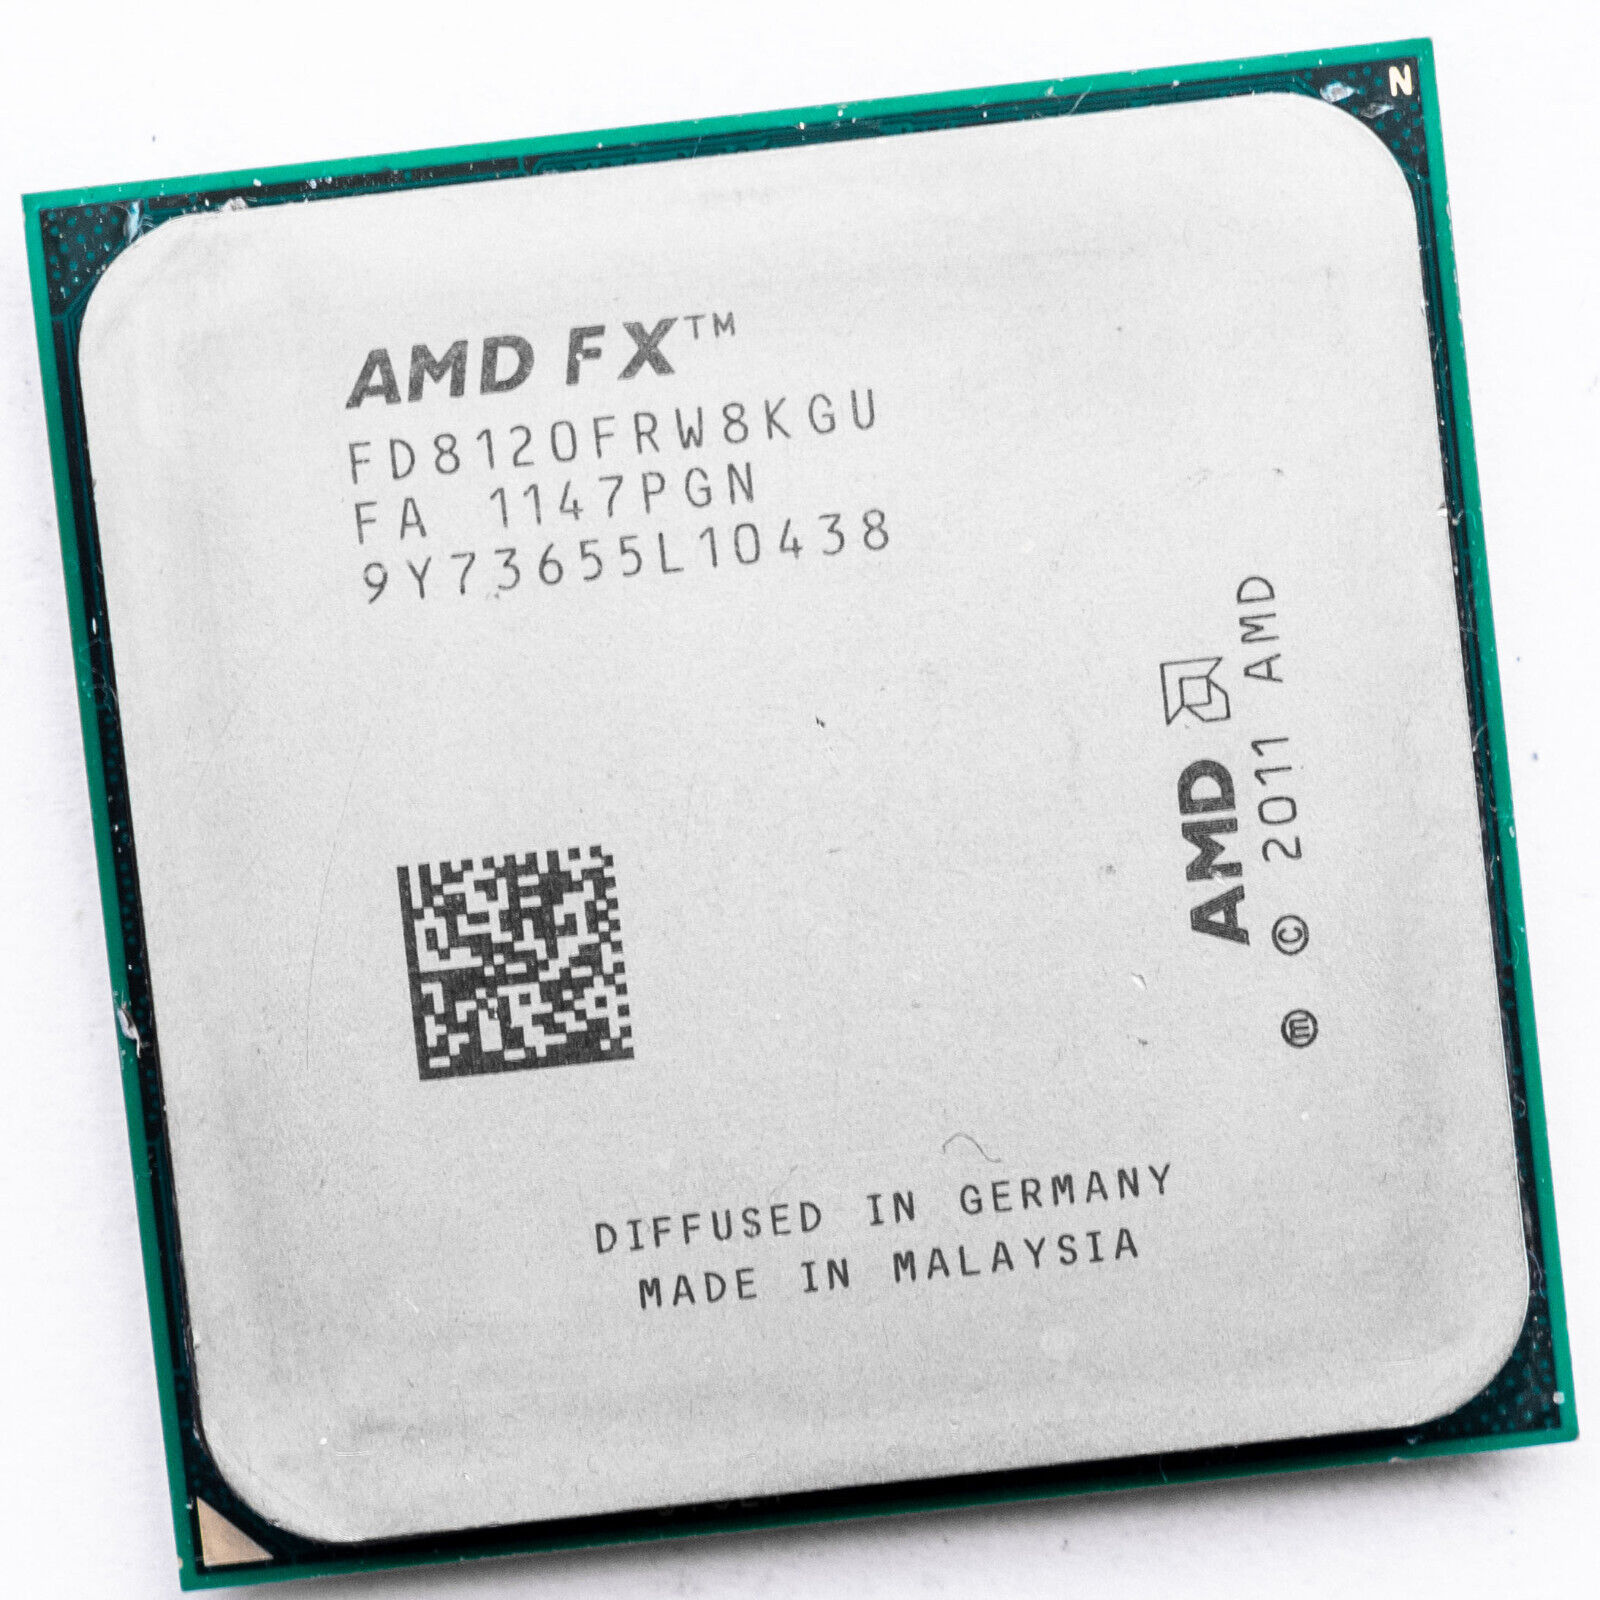 AMD FX-8120 FD8120FRW8KGU AM3+ 3.1GHz Eight Core Processor for HP Pavilion Elite